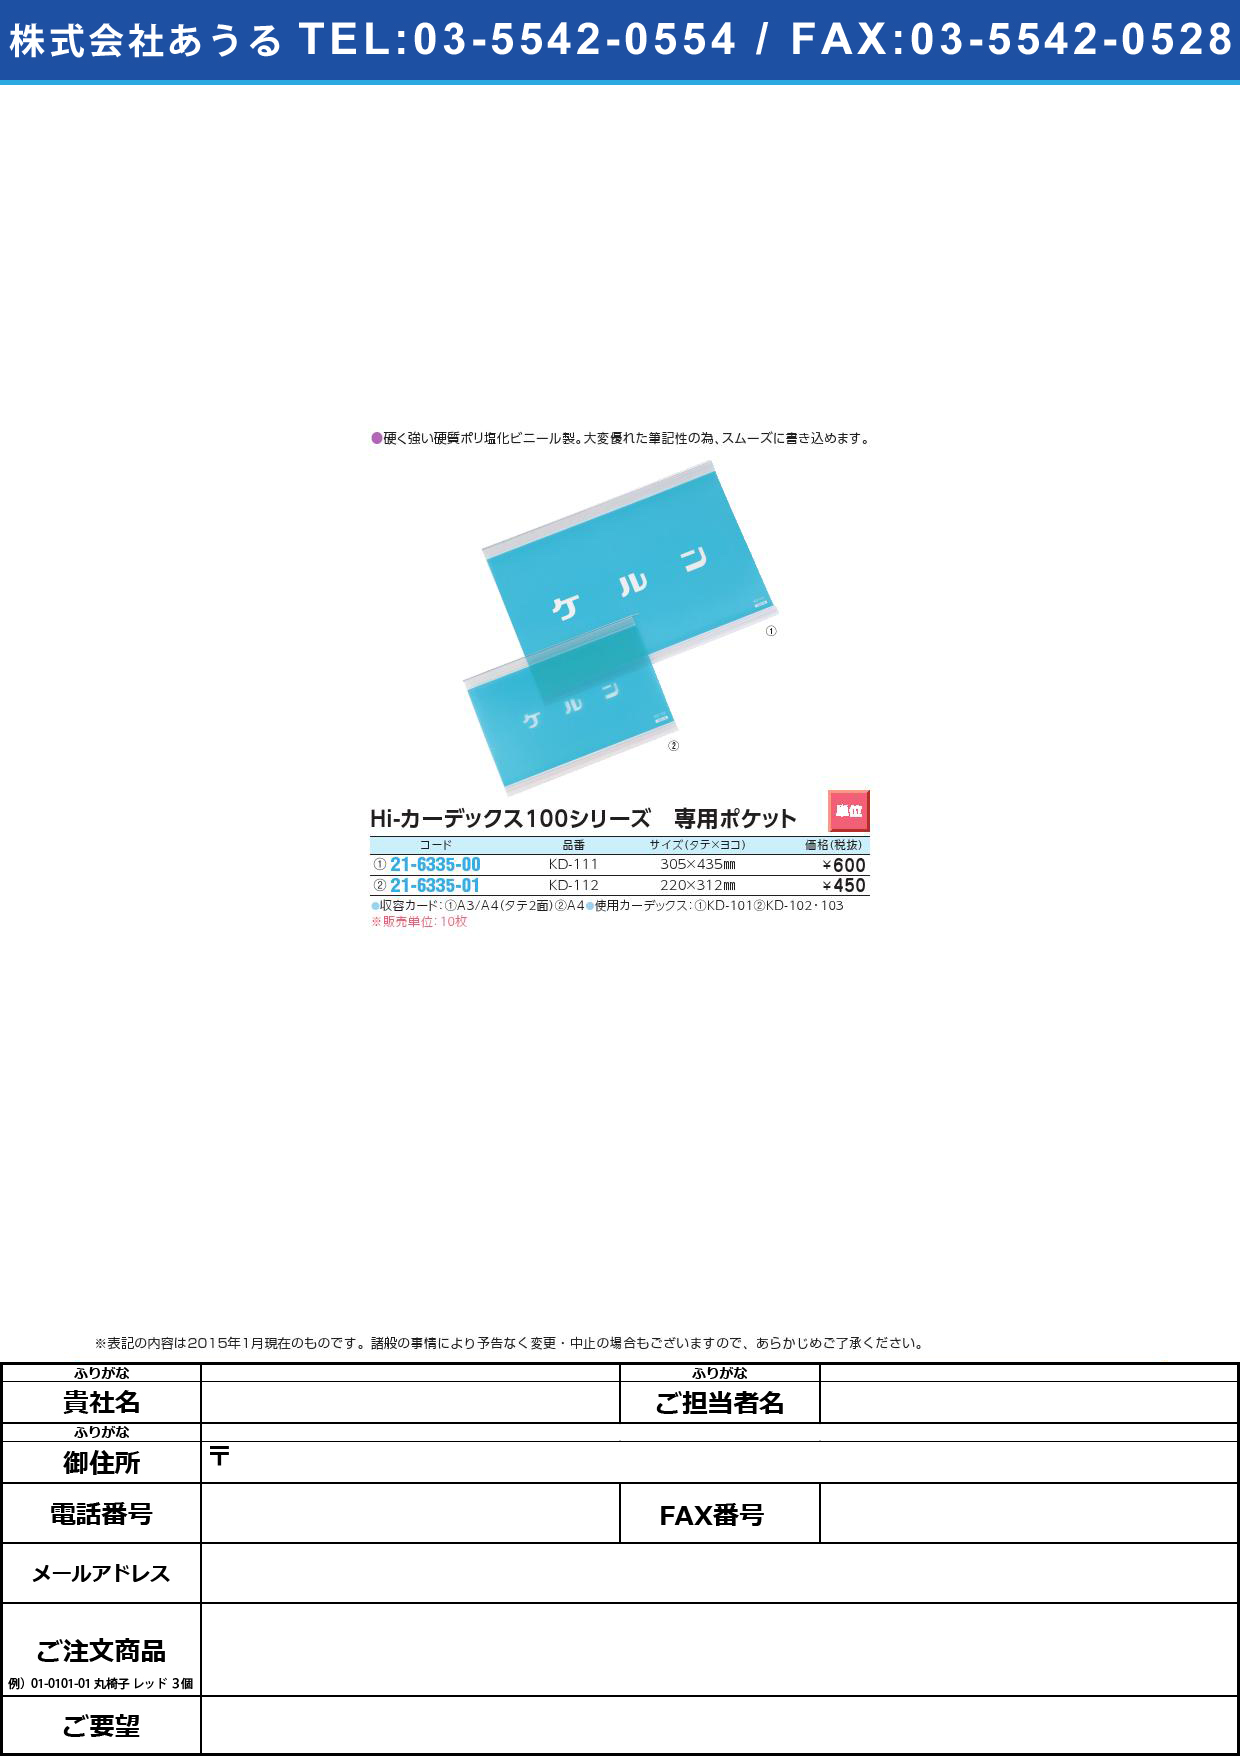 Ｈｉカーデックス１００専用ポケット HIｶｰﾃﾞｯｸｽｾﾝﾖｳﾎﾟｹｯﾄ(21-6335-00)KD-111(A3)